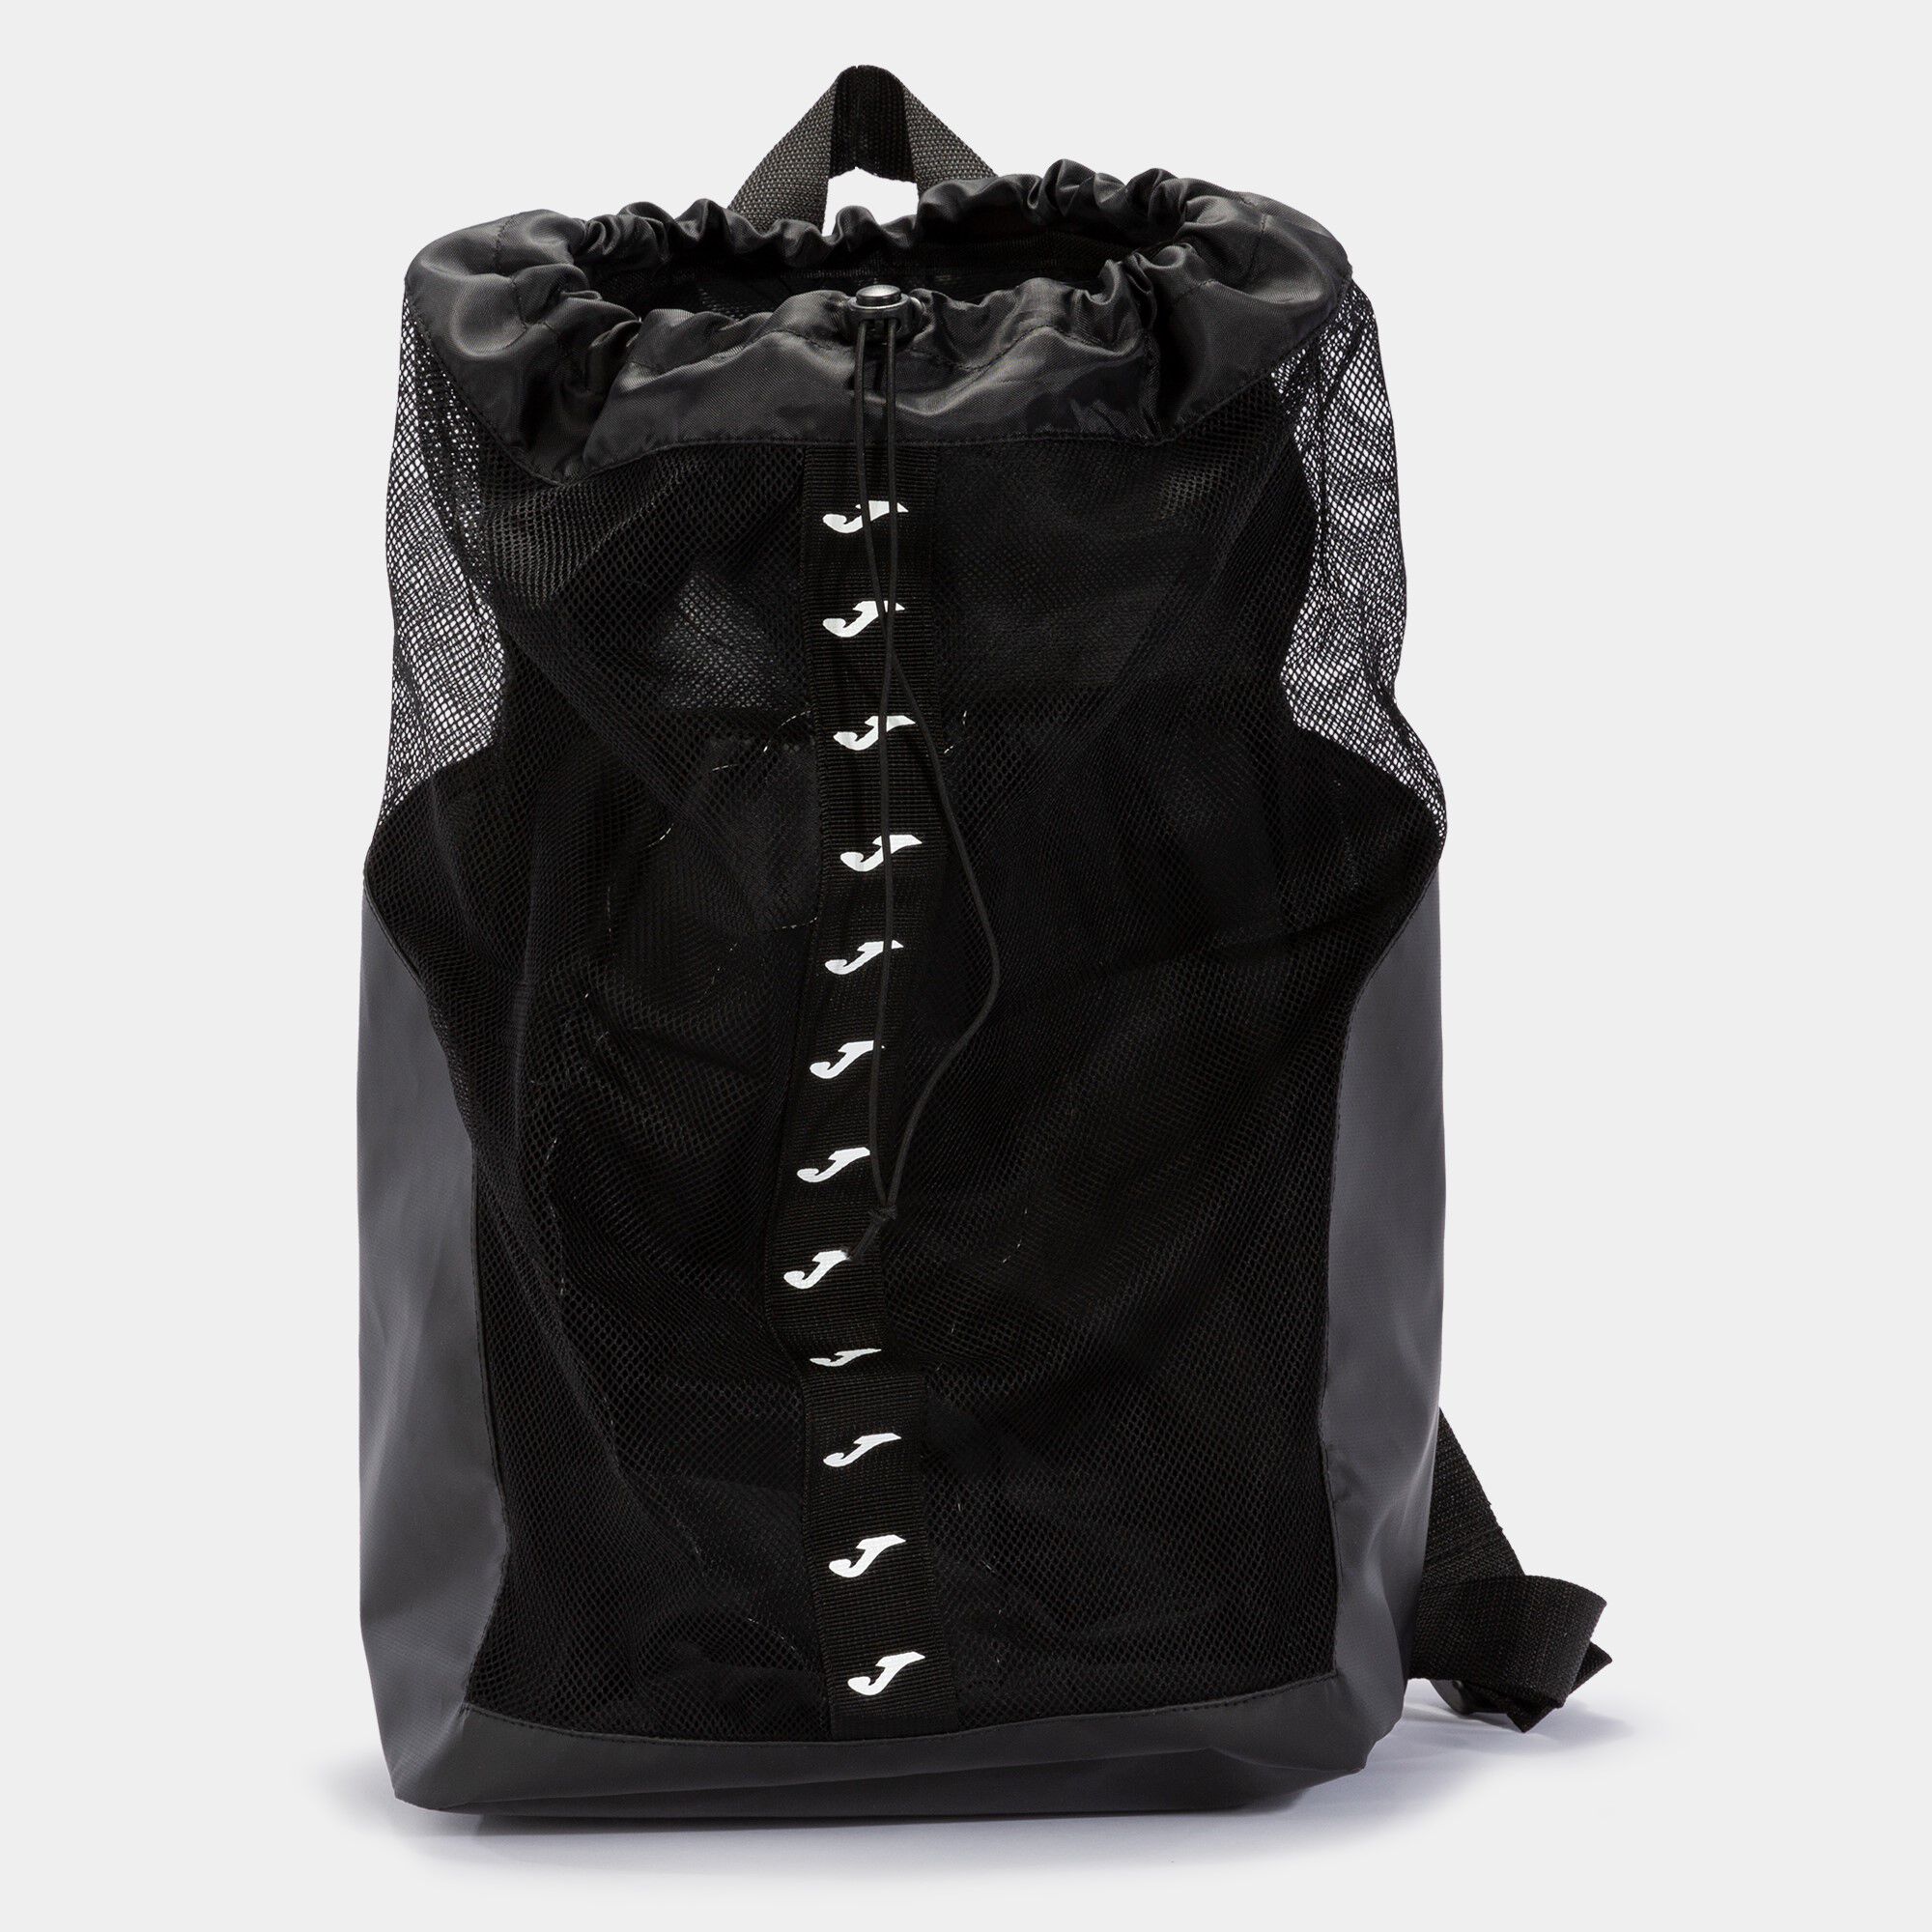 Backpack - shoe bag Splash black